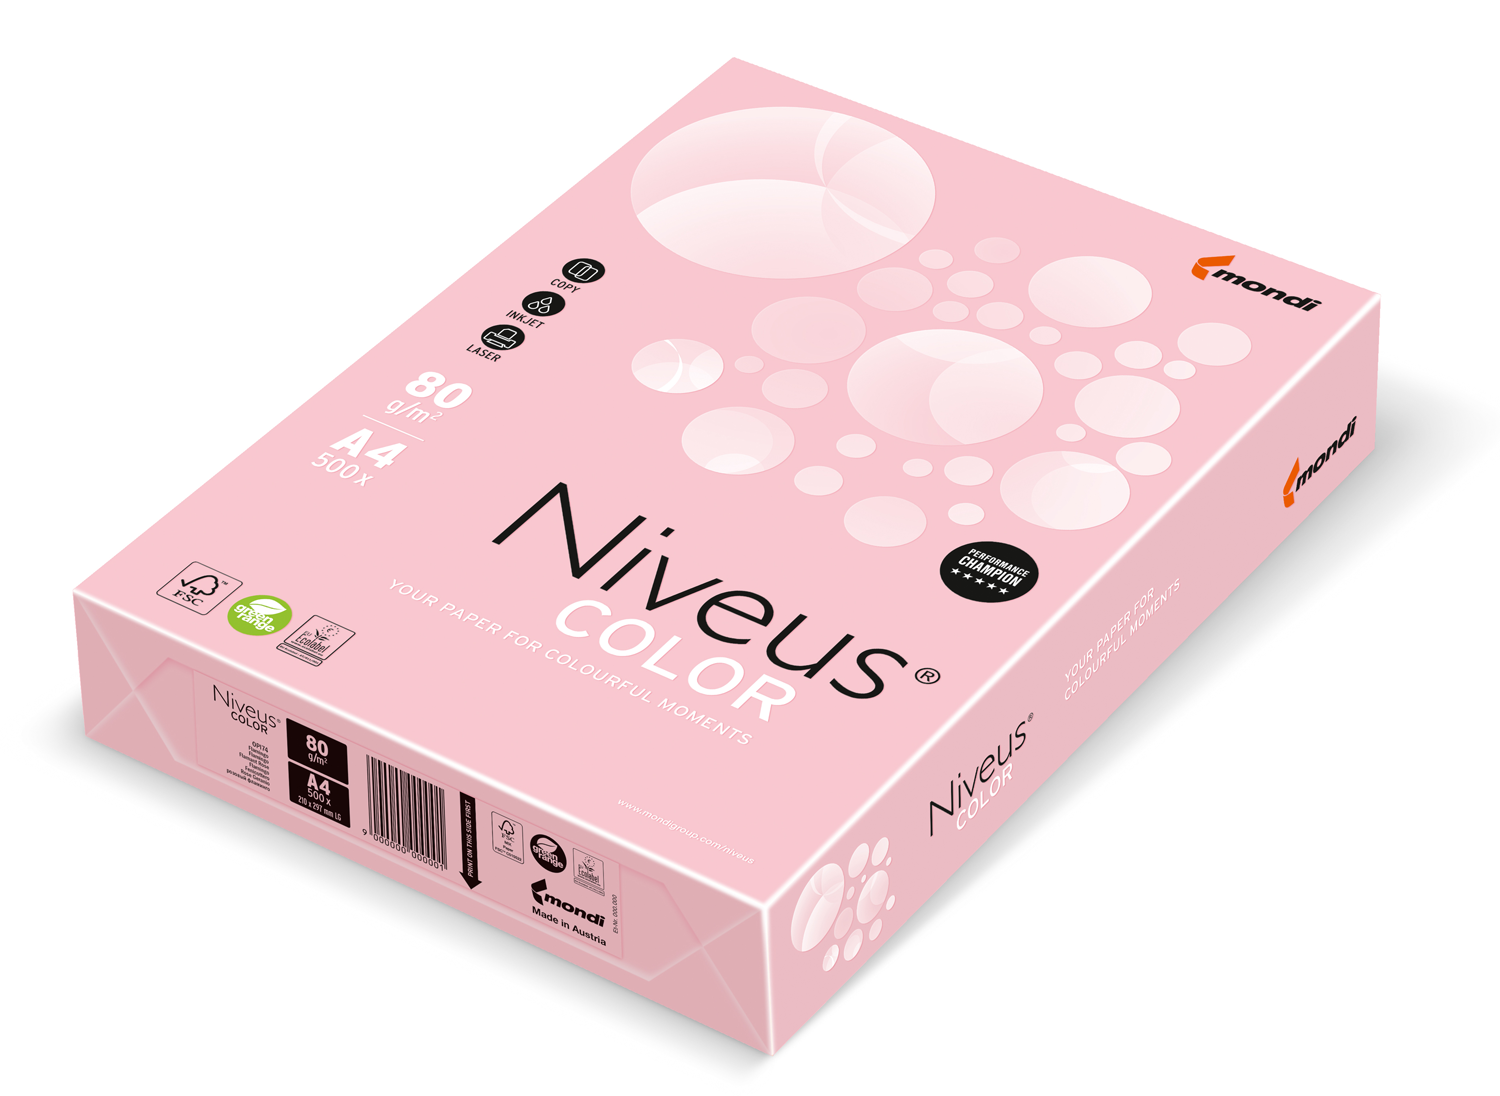 Бумага офисная цветная Niveus OPI 74 А4, 80 г/м2, 500 листов, светло-розовая